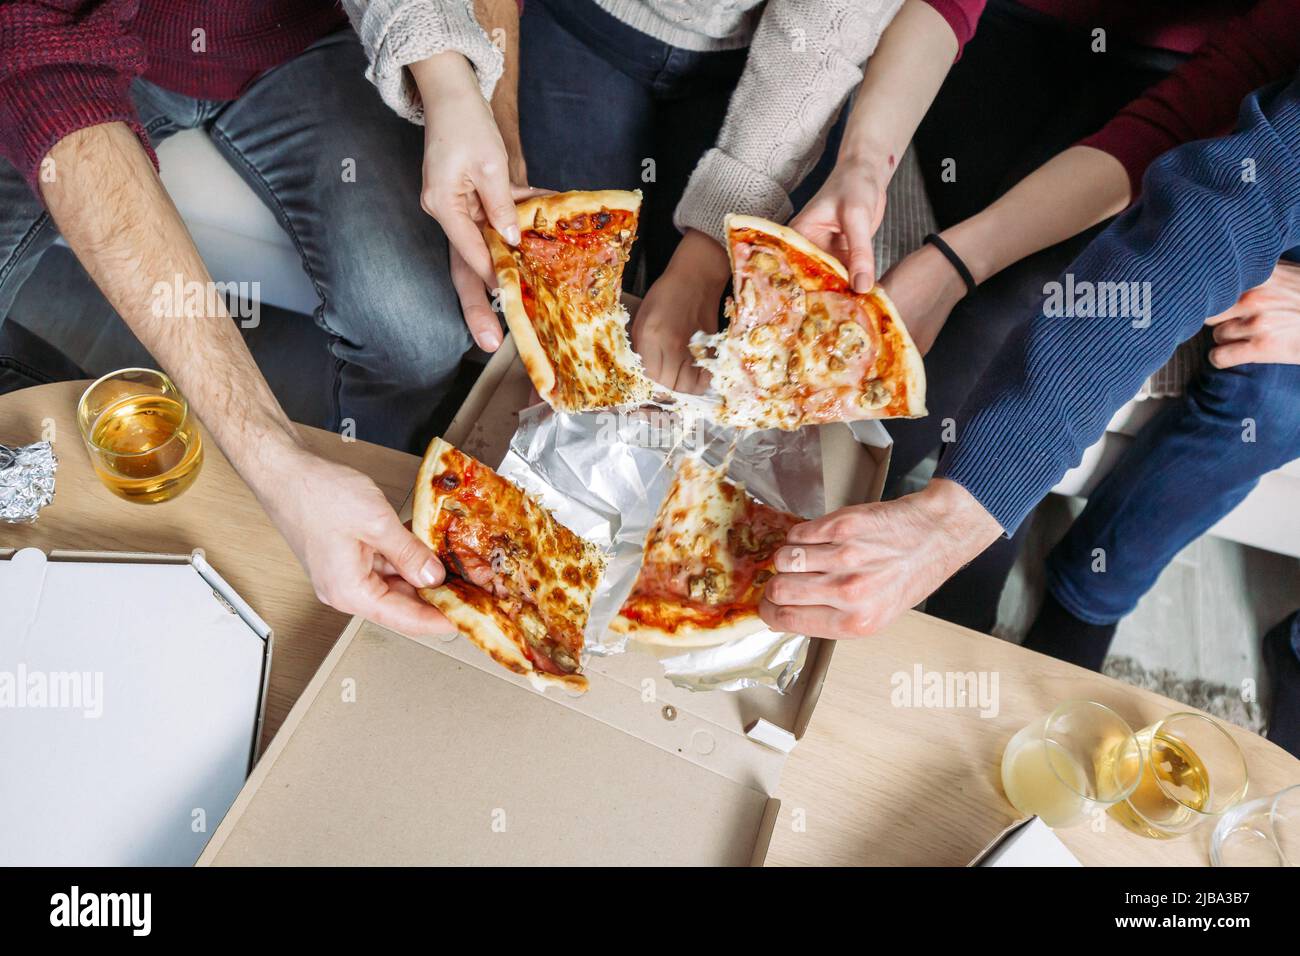 Les mains des hommes et des femmes attrapant des morceaux de pizza. Soirée cinéma à la maison avec des amis Banque D'Images